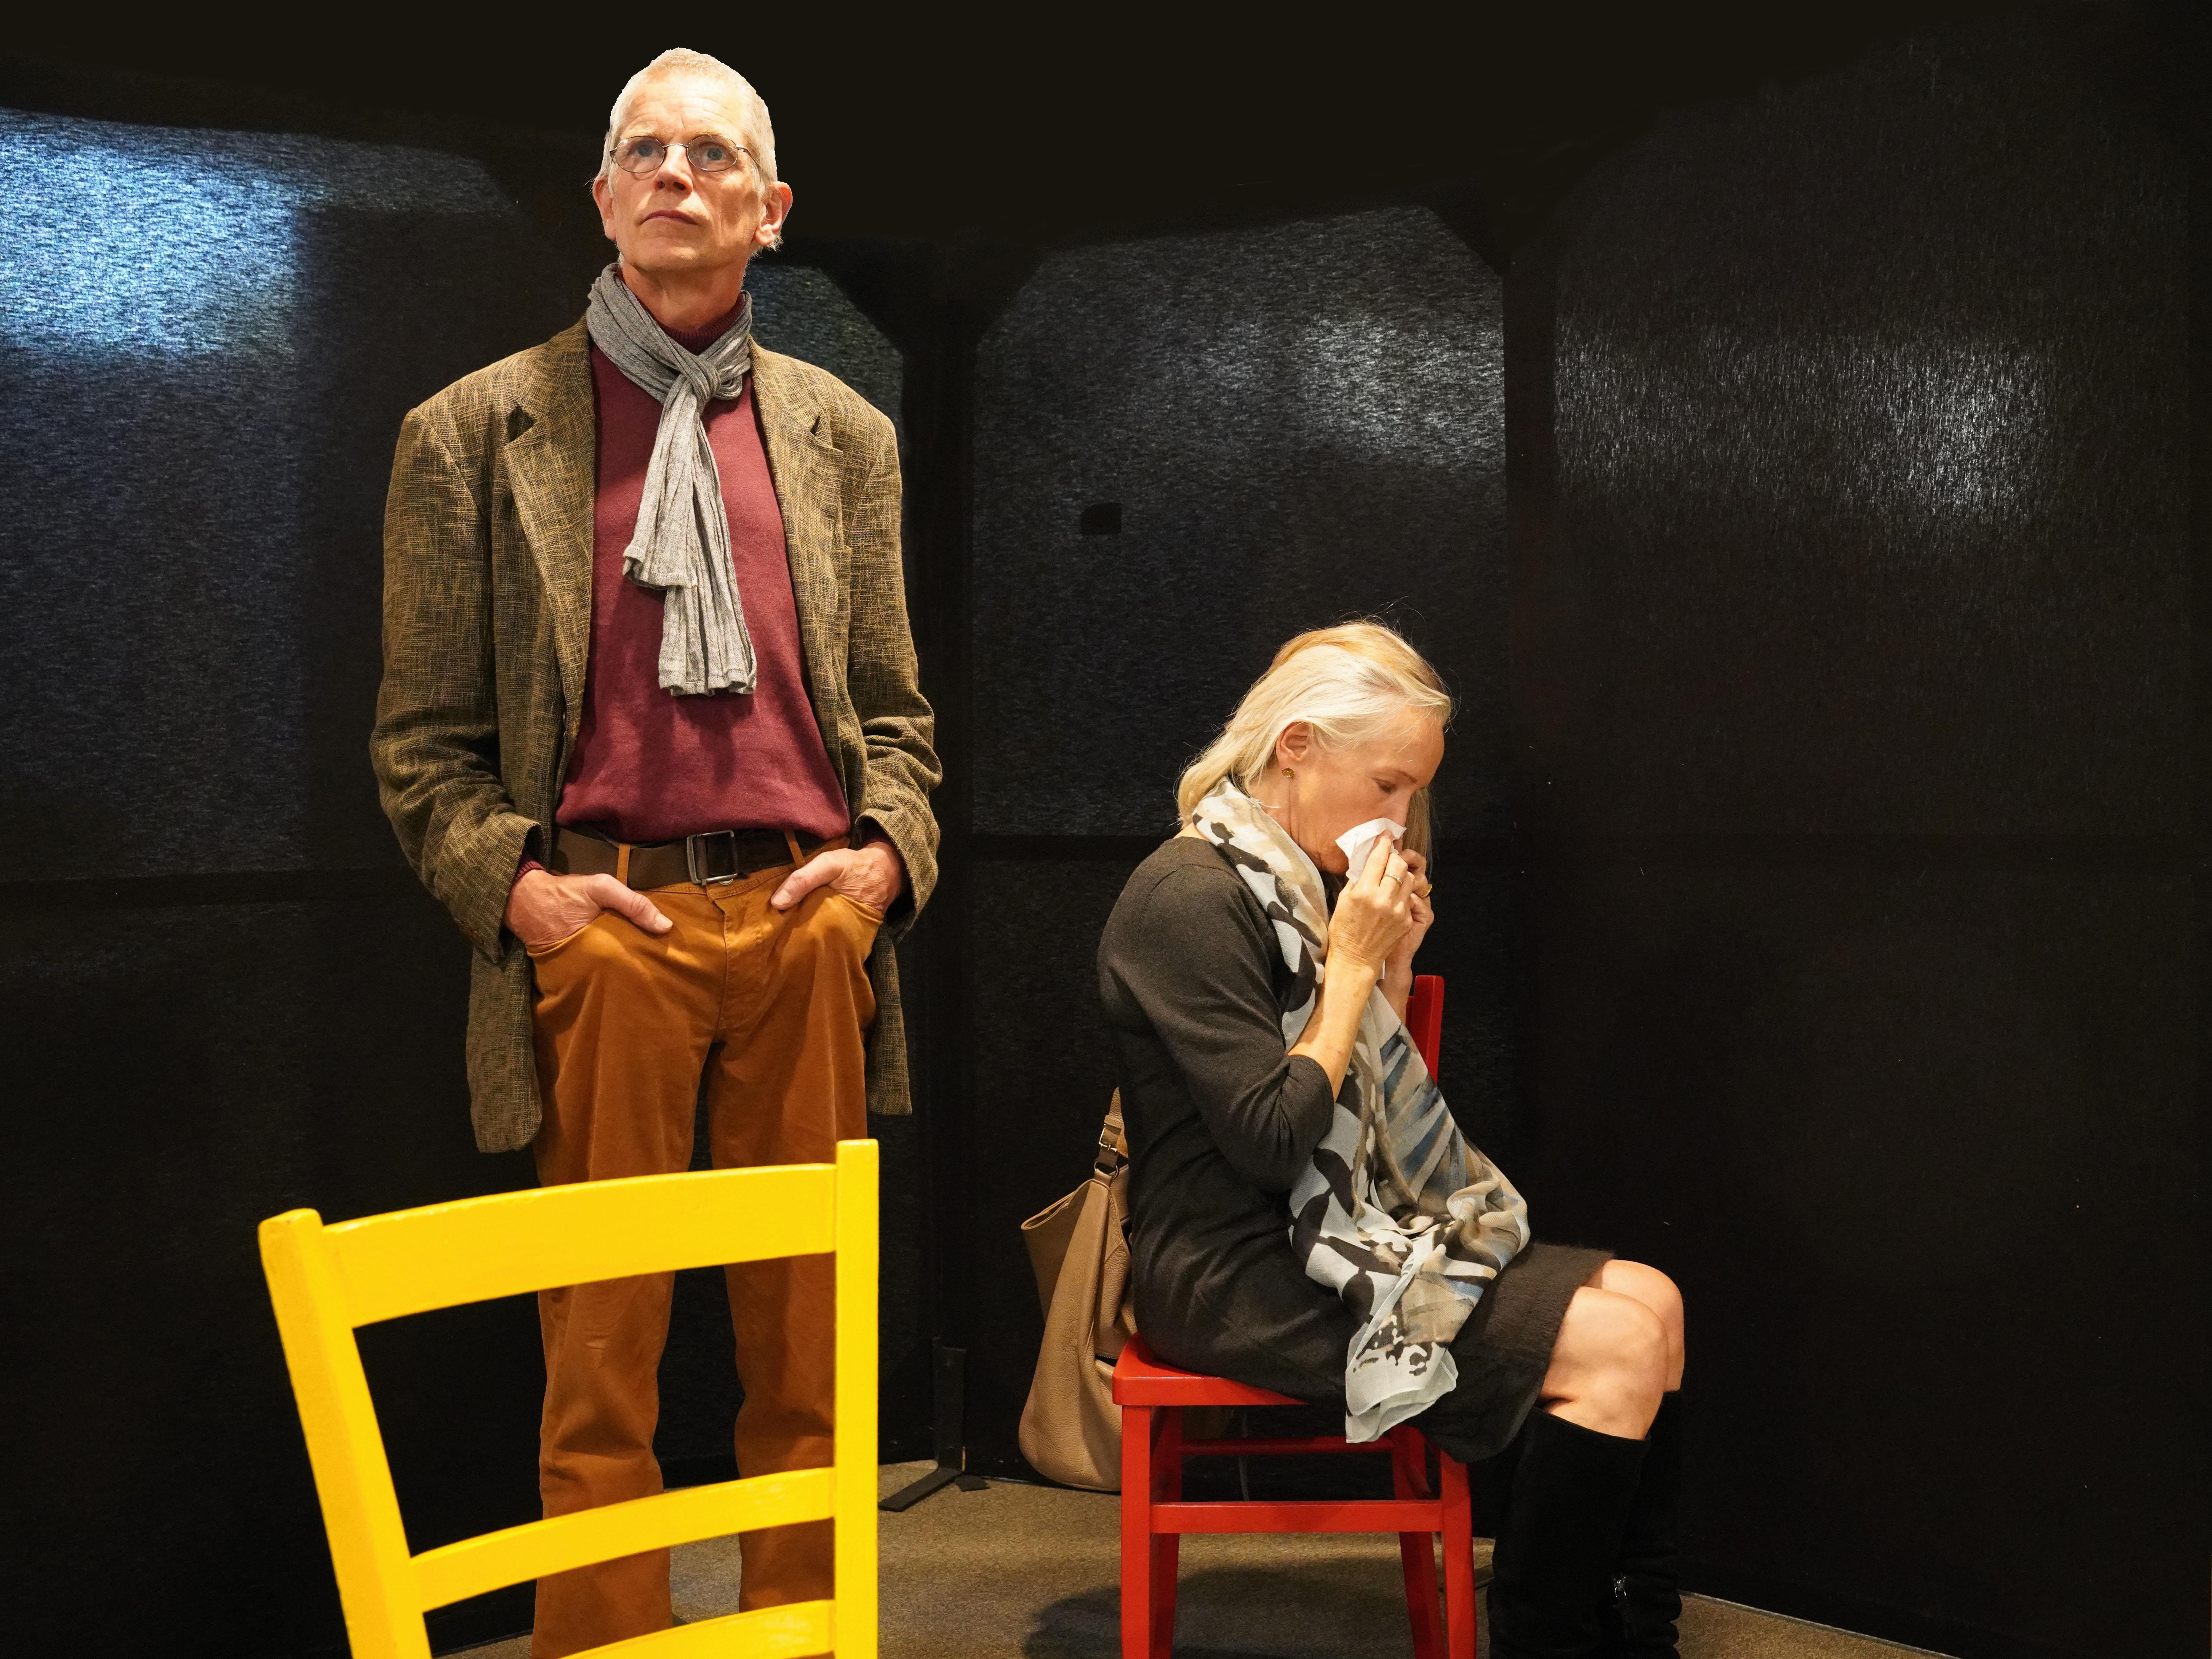 Eine Frau sitzt auf einem roten Stuhl und schnäuzt sich die Nase. Links neben ihr steht ein Mann hinter einem gelben Stuhl und hat die Hände in die Hosentaschen gesteckt.